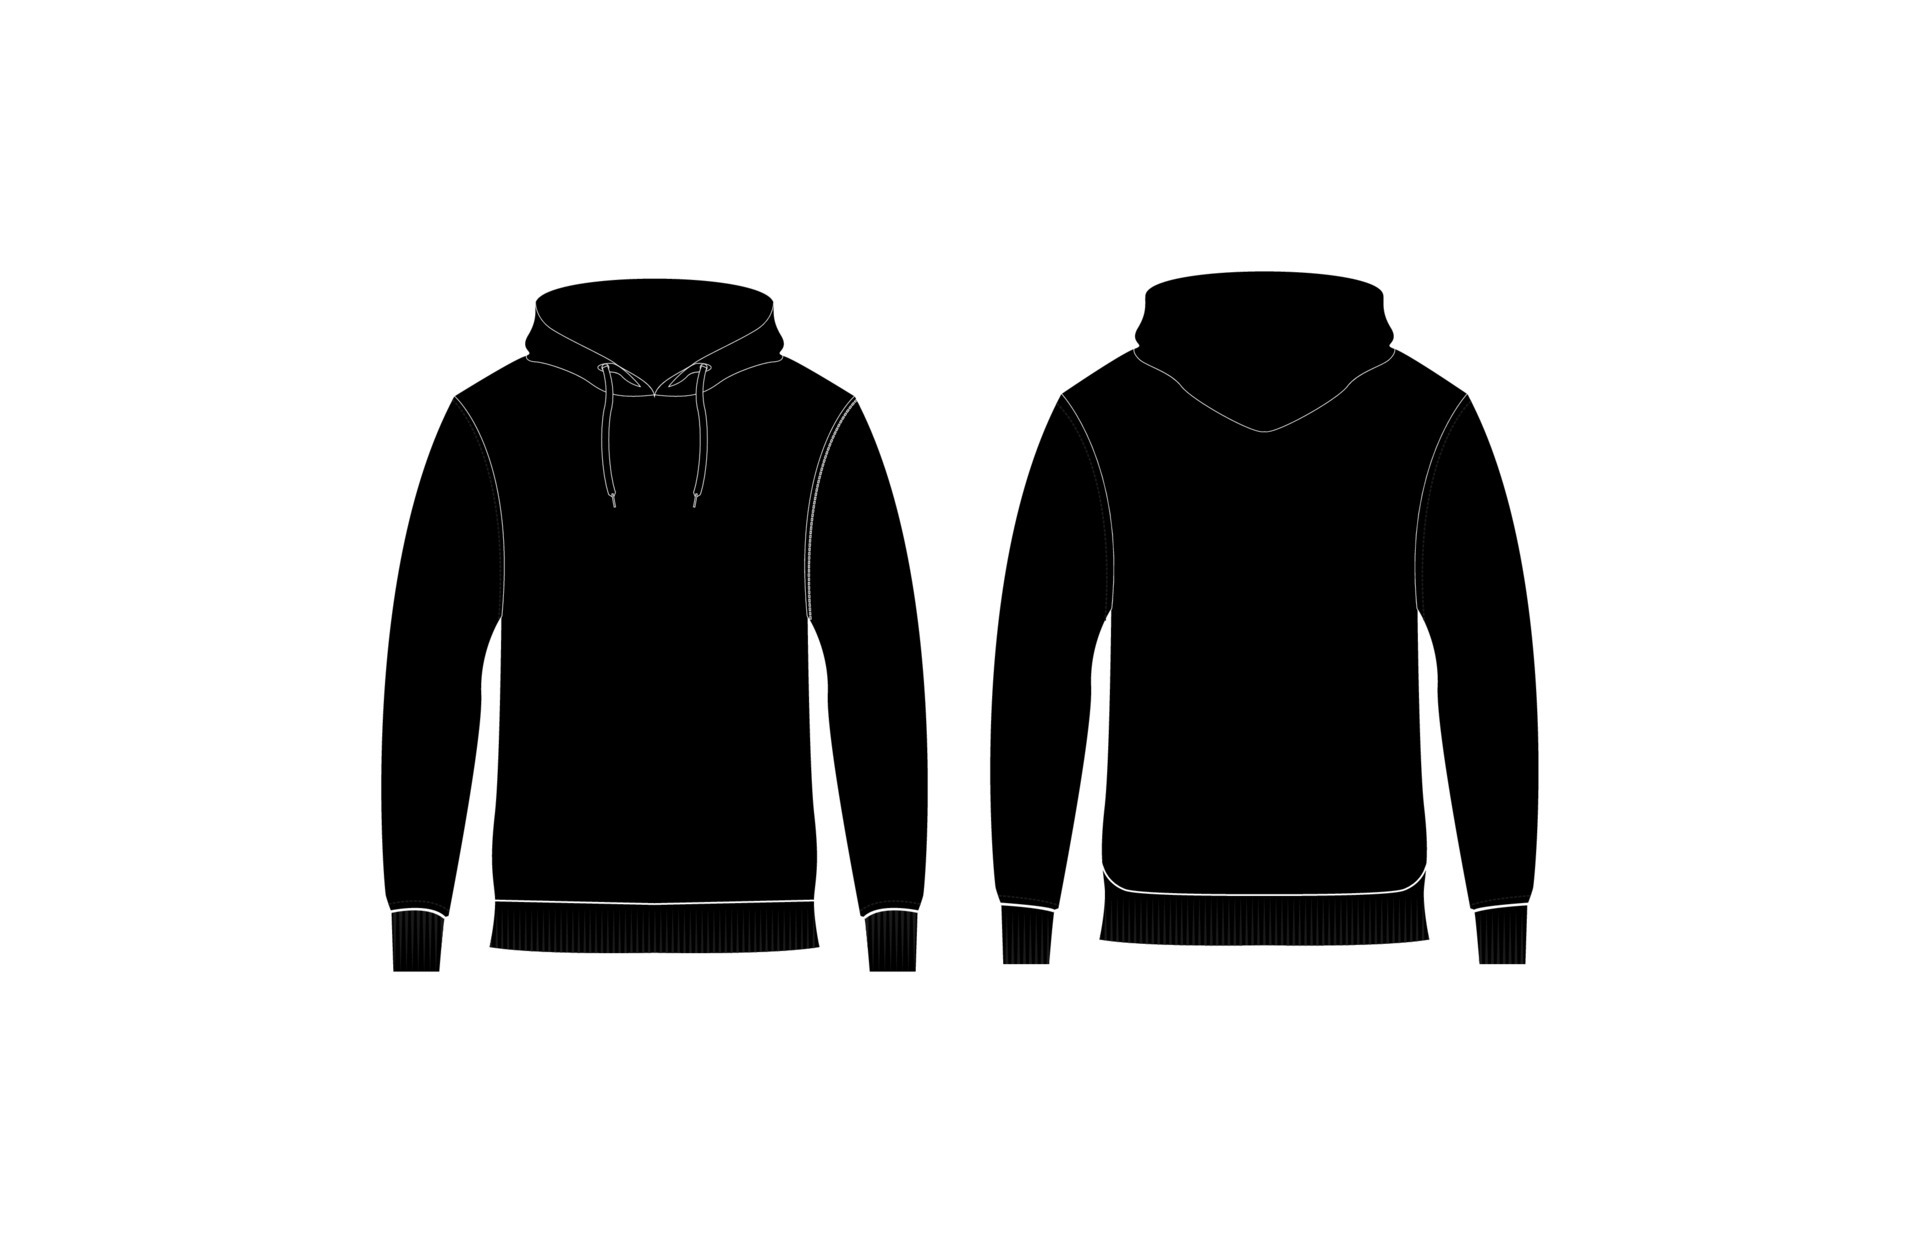 Hoodie Sweatshirt Black Front... 4491934 Vector Art at Vecteezy